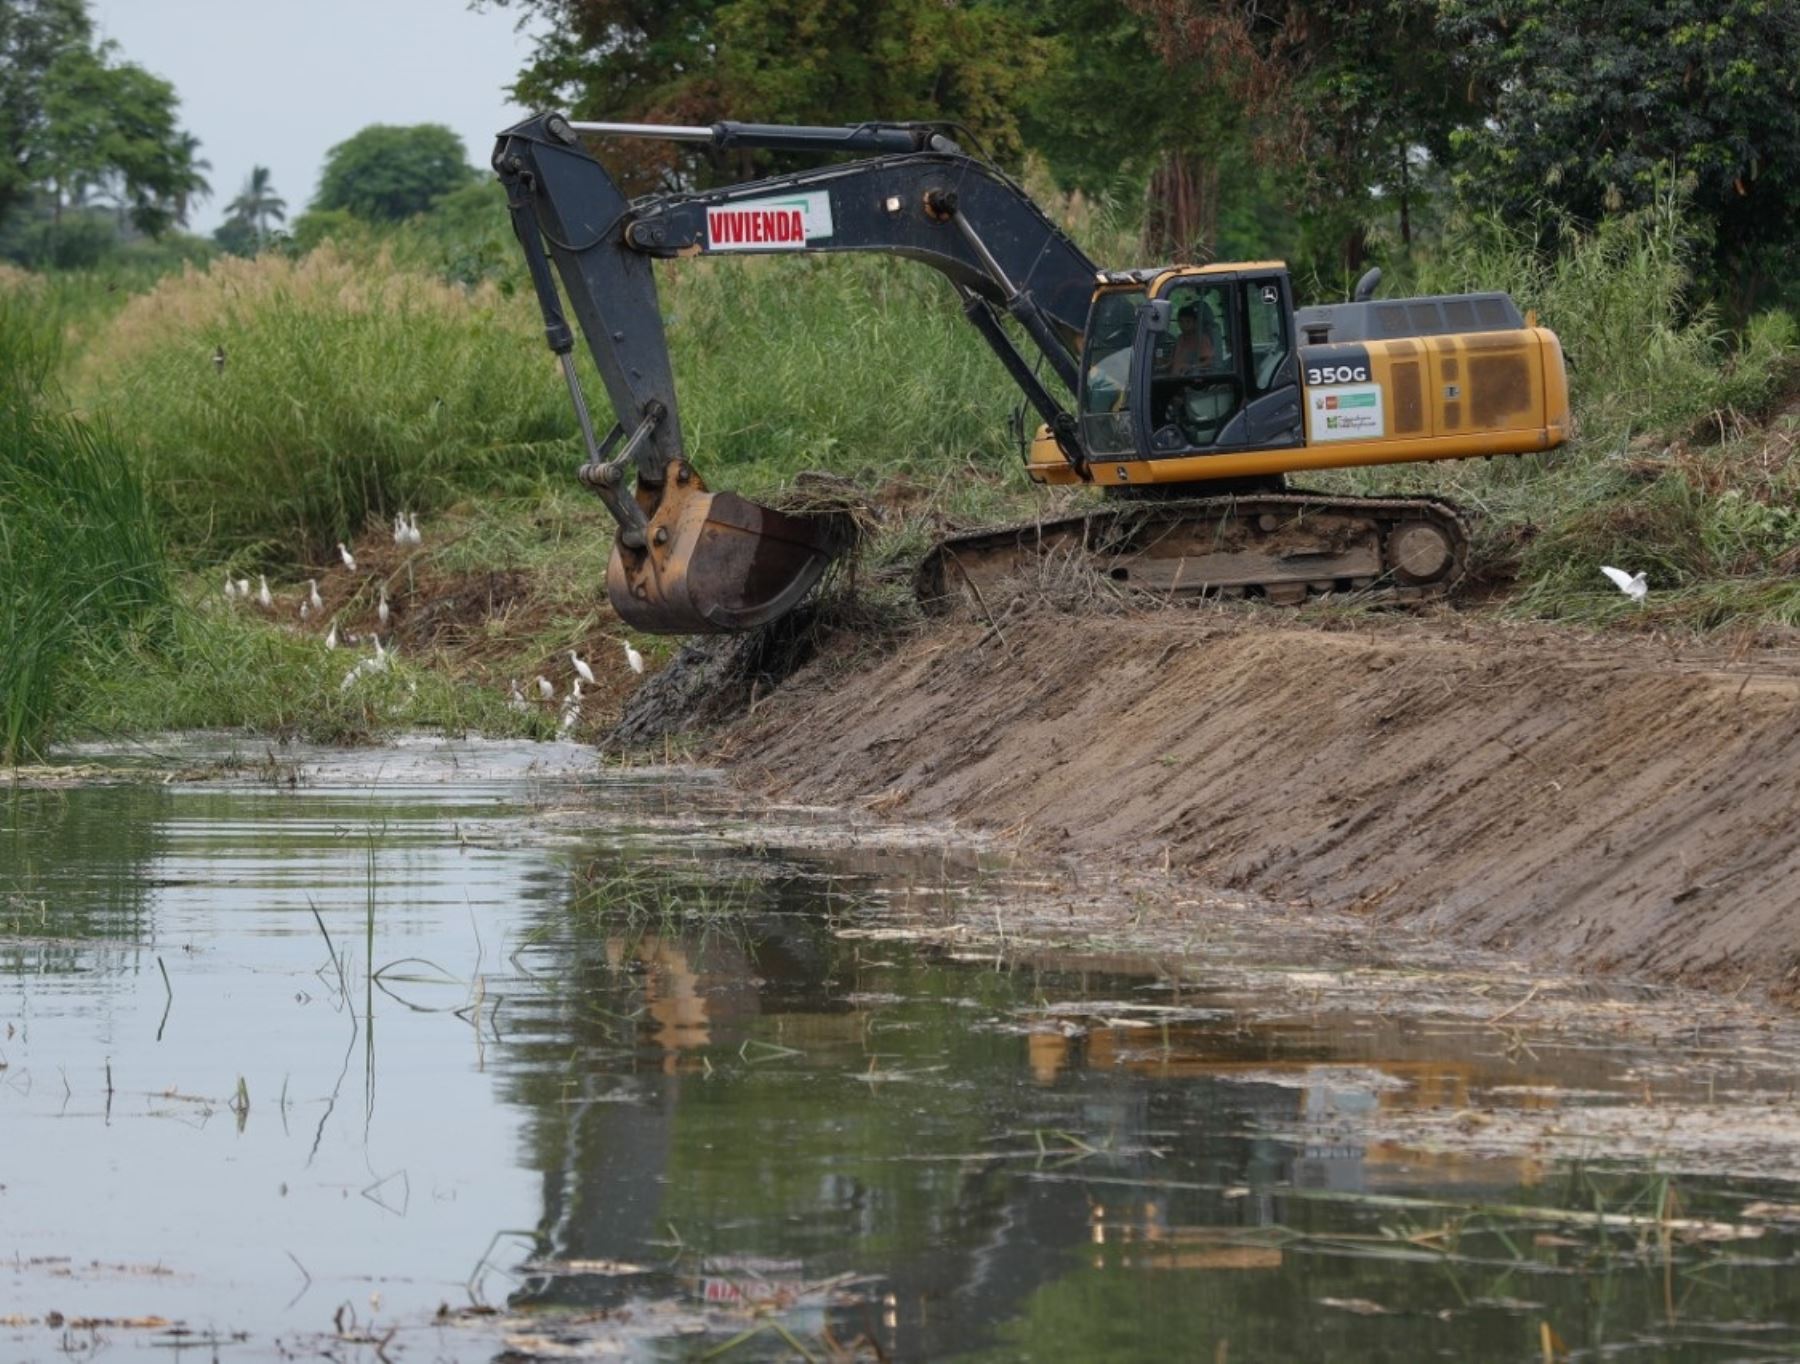 Con apoyo de maquinaria pesada del Ministerio de Vivienda se iniciaron los trabajos de limpieza en la quebrada Indoamérica, región Ucayali, para prevenir posibles daños durante la temporada de lluvias. ANDINA/Difusión